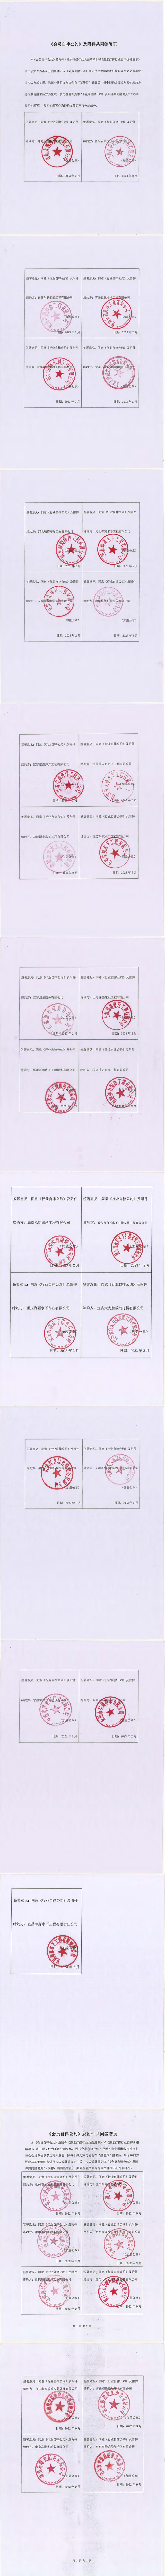 中国潜水救捞行业协会关于发布《会员自律公约》及配套文件会员单位名单的通知_01.jpg